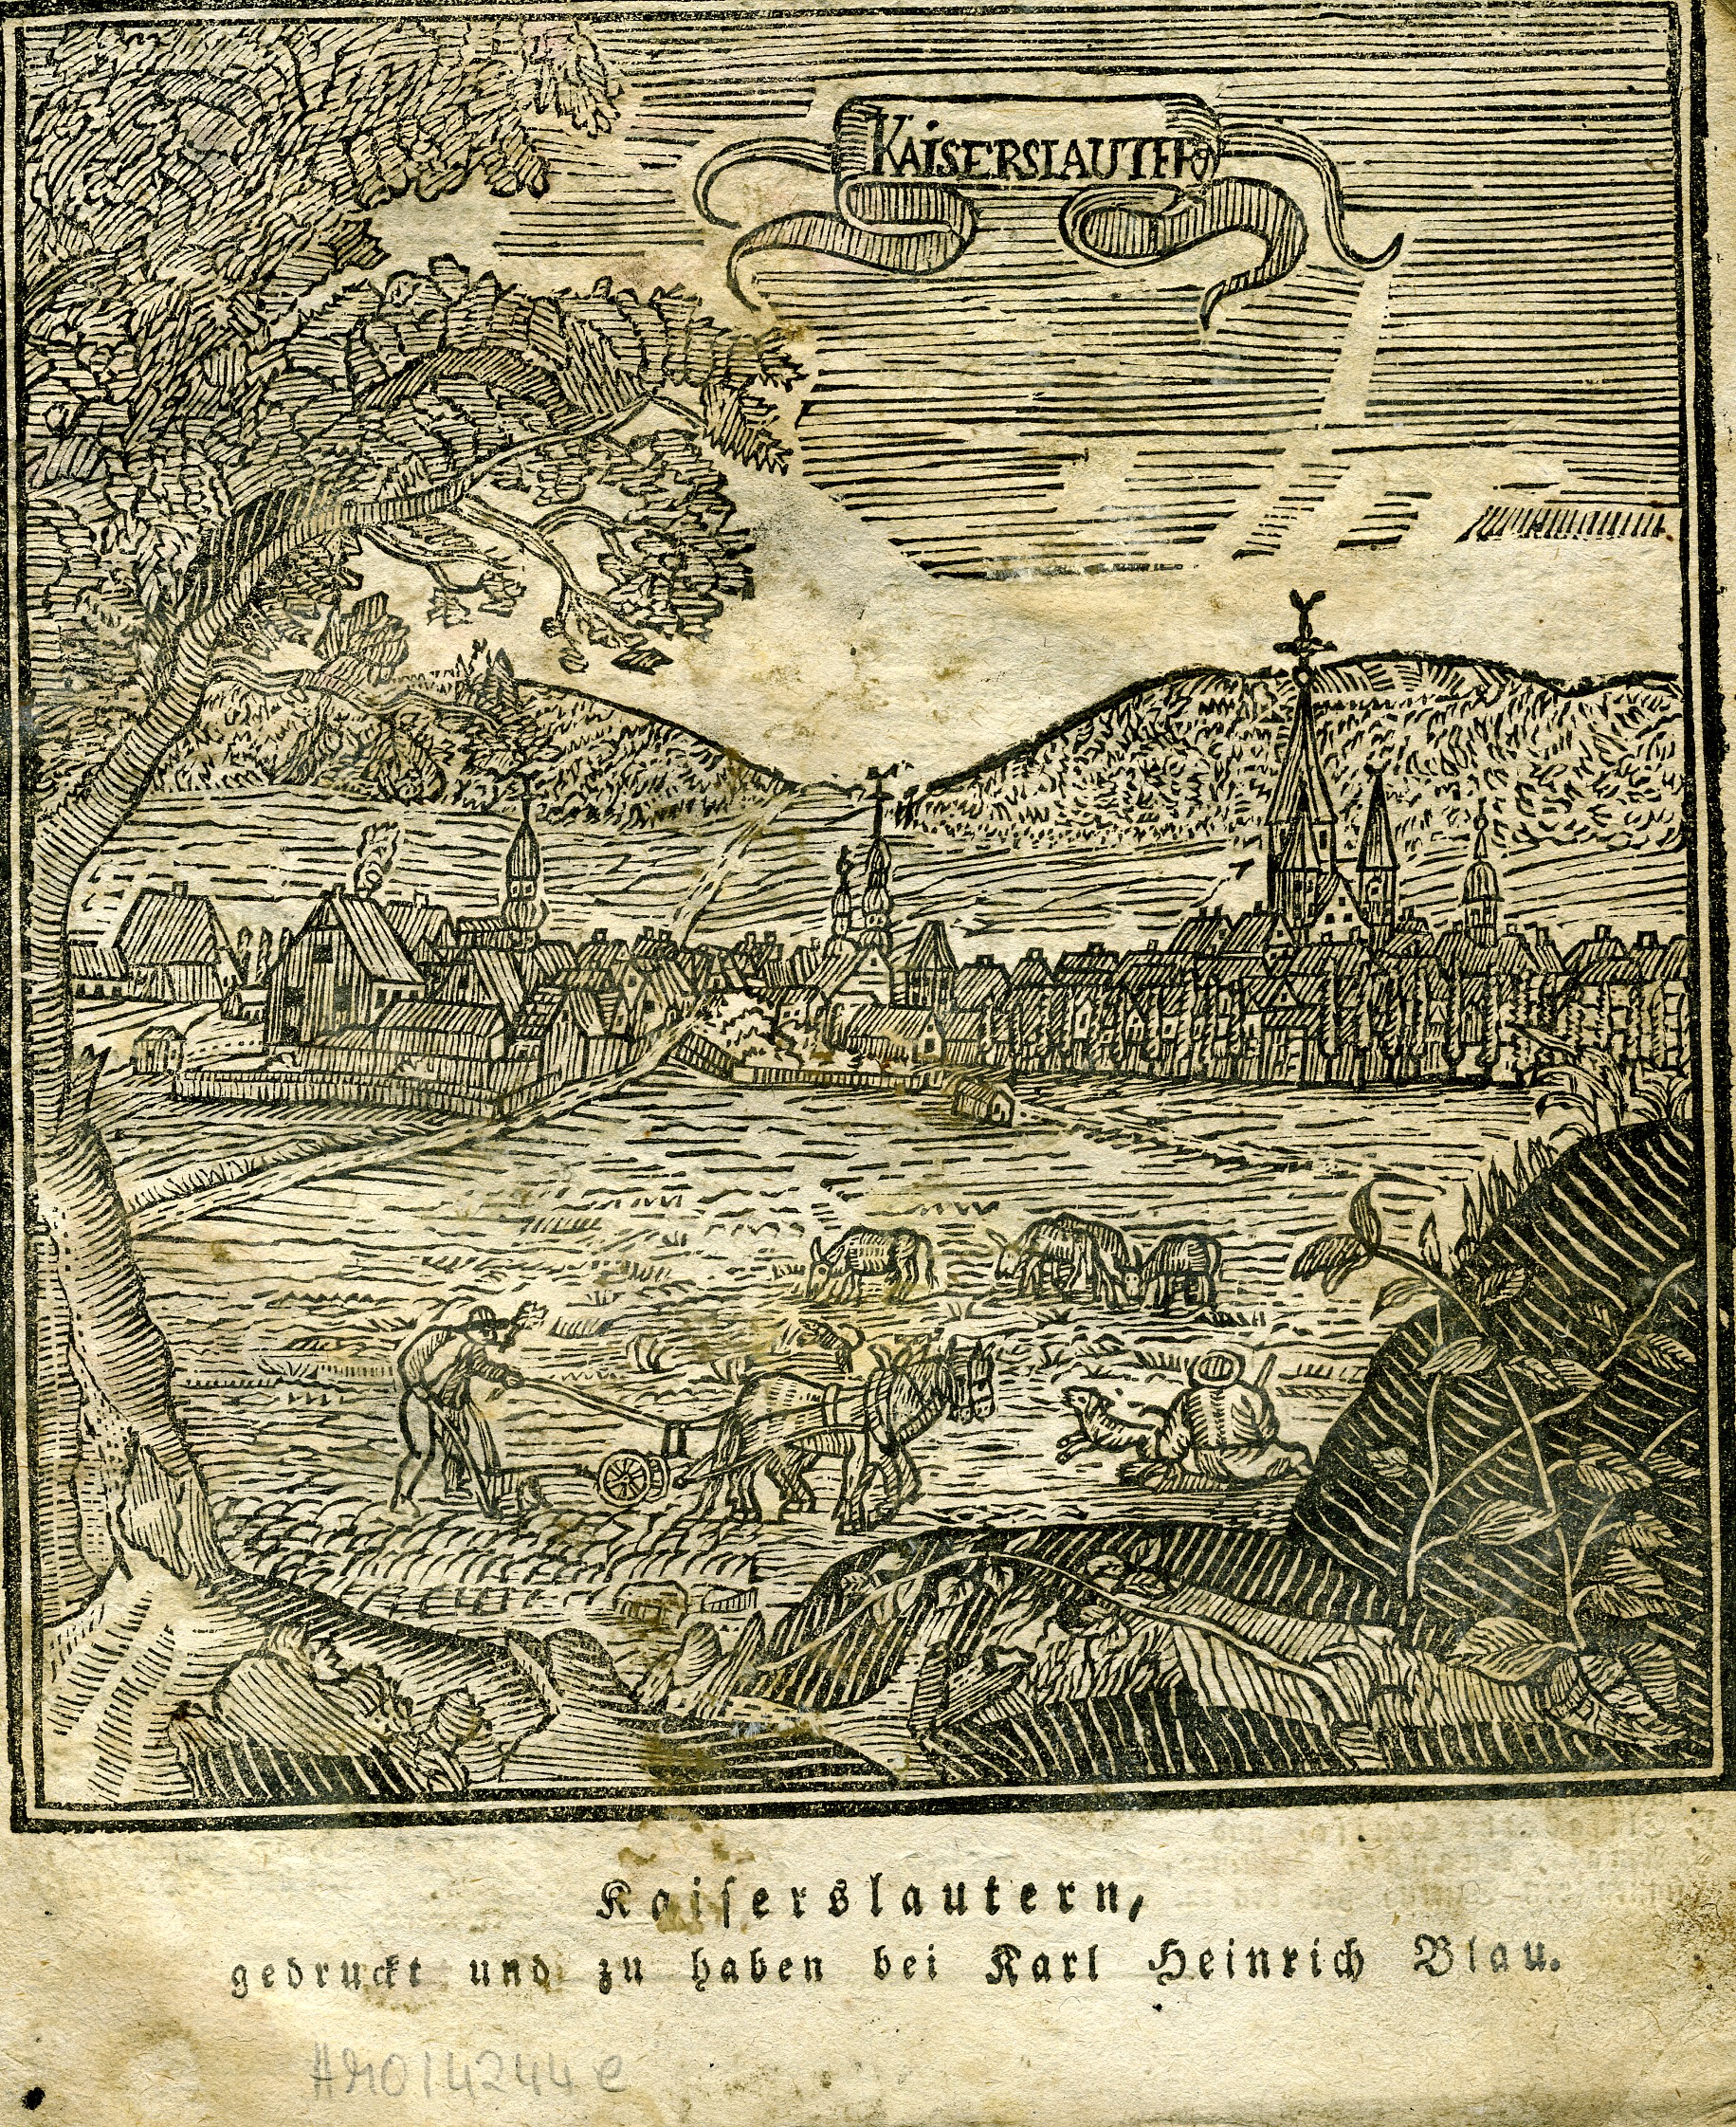 Historien-Kalender für das Jahr 1820, Kaiserslautern (Historisches Museum der Pfalz, Speyer CC BY)